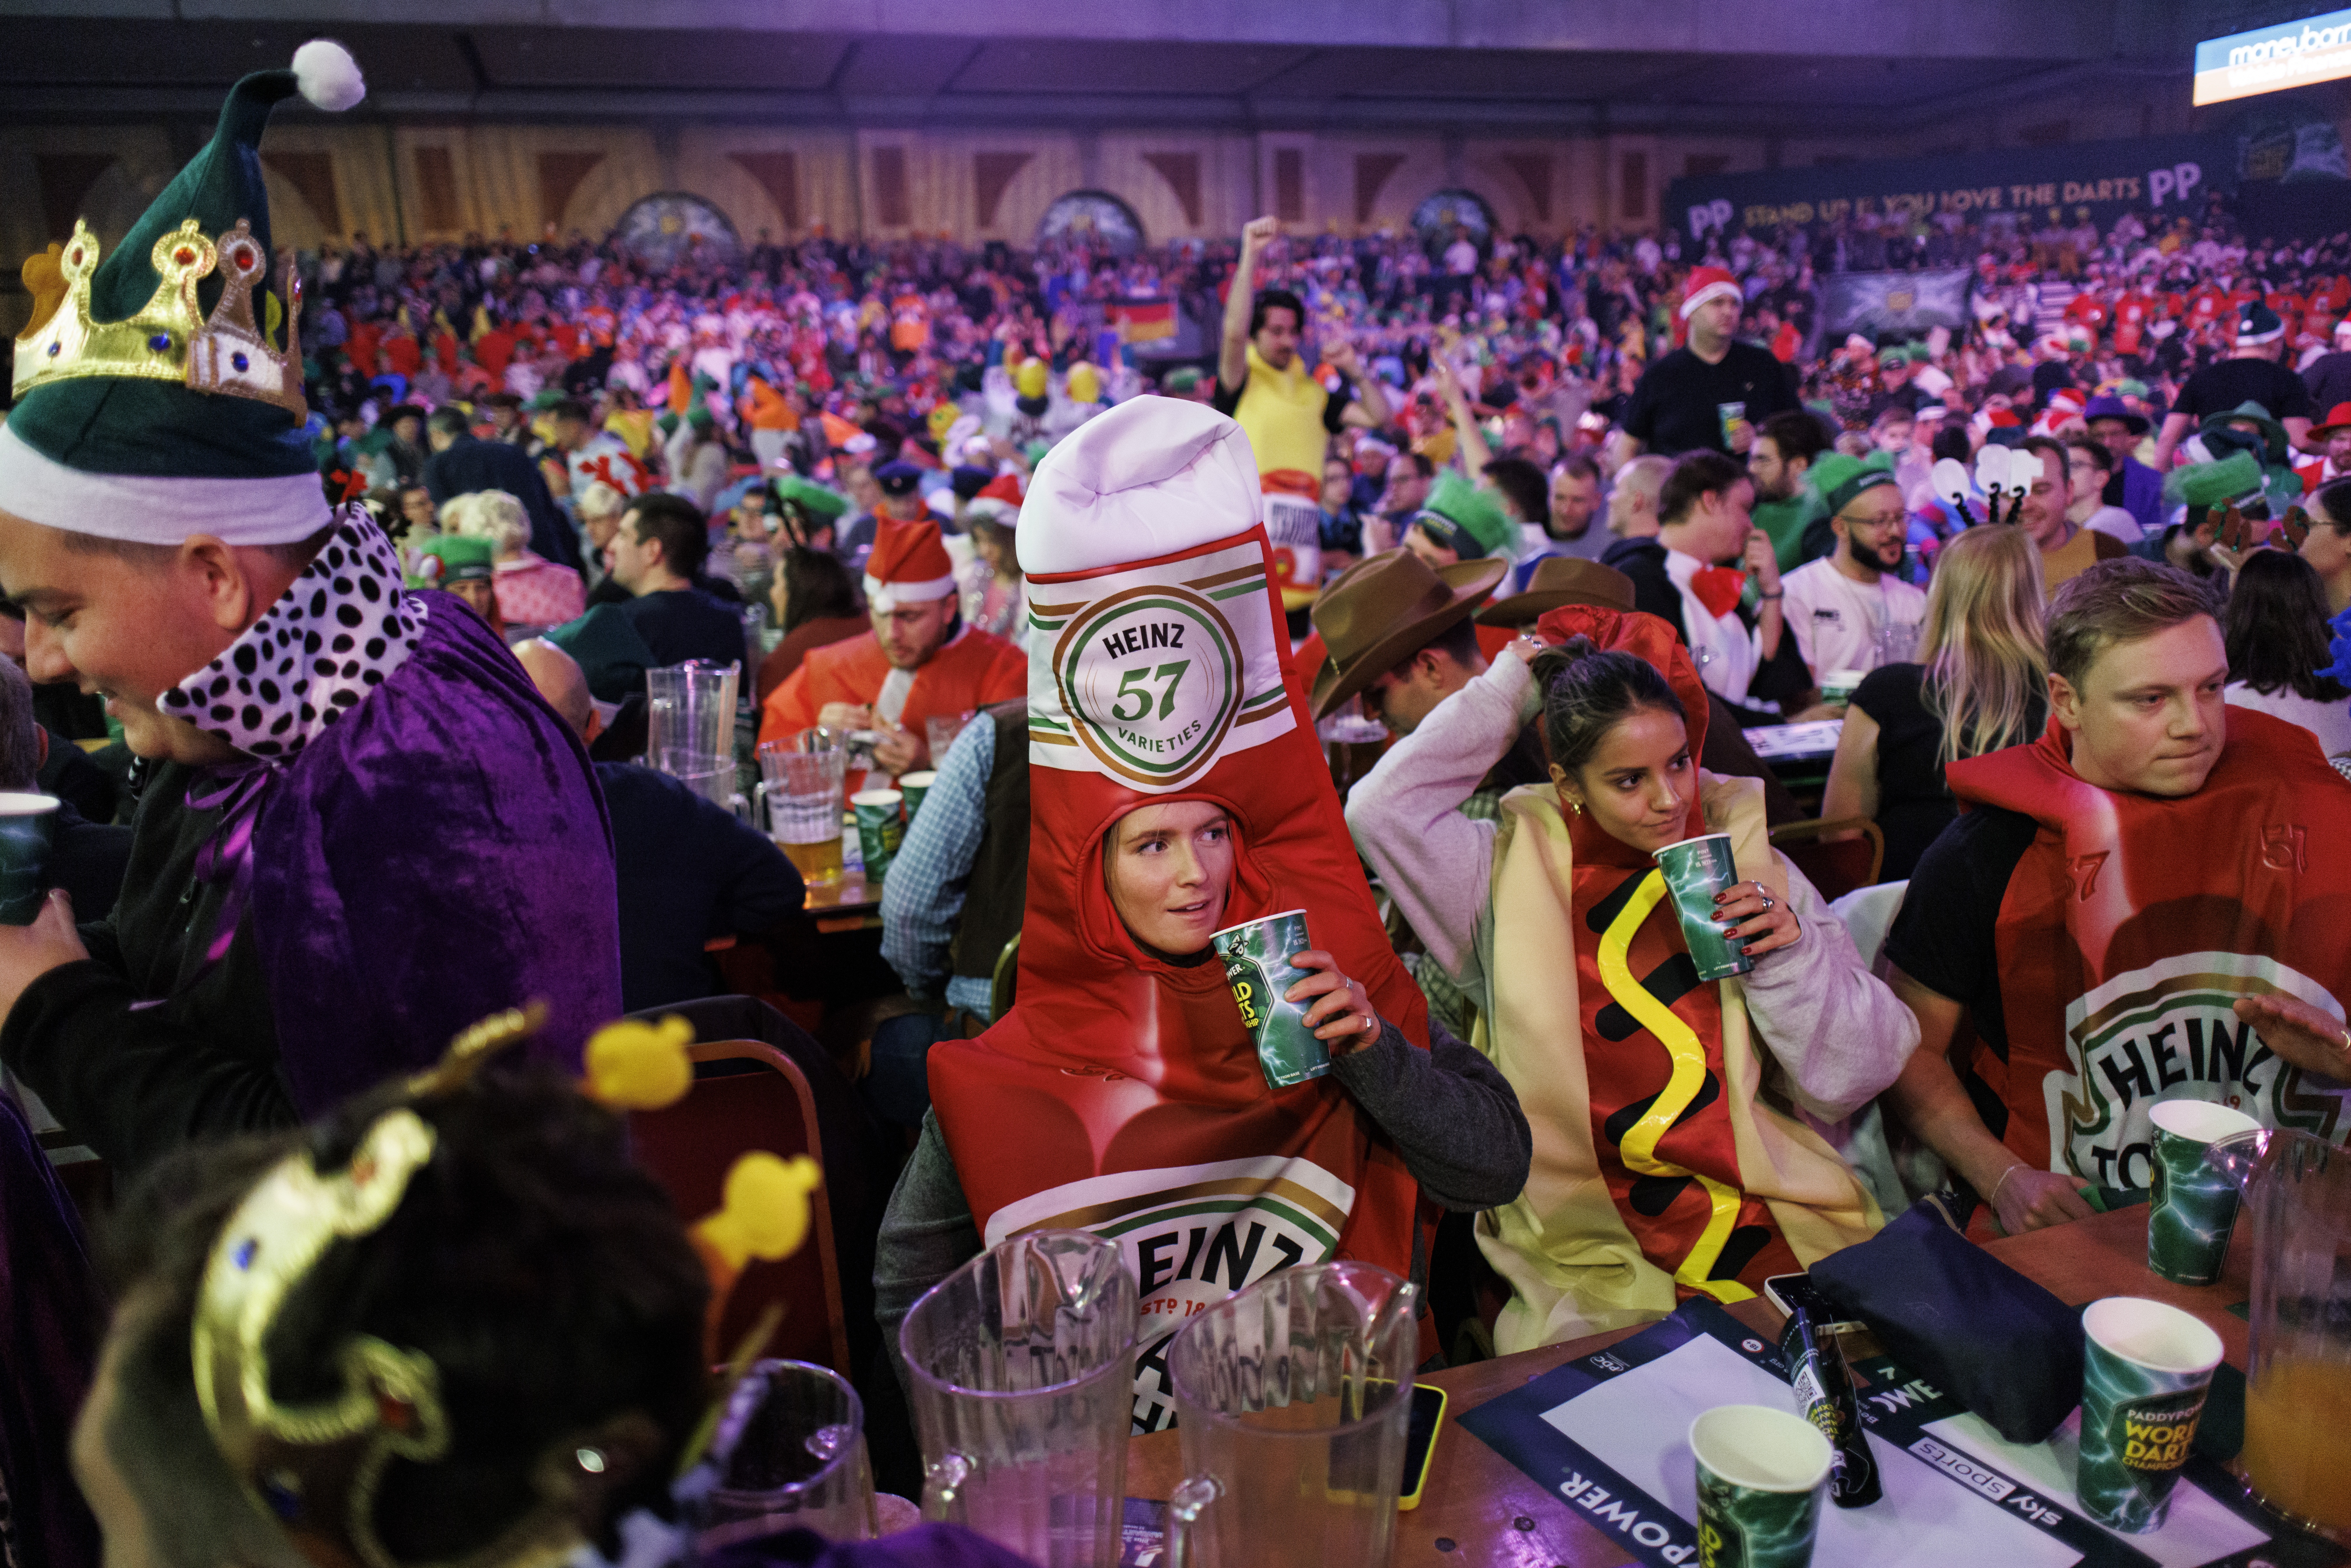 Eine Ketchup-Flasche und ein Hotdog gehörten zu den Zuschauern, die am Eröffnungsabend der PDC-Weltmeisterschaften jubelten